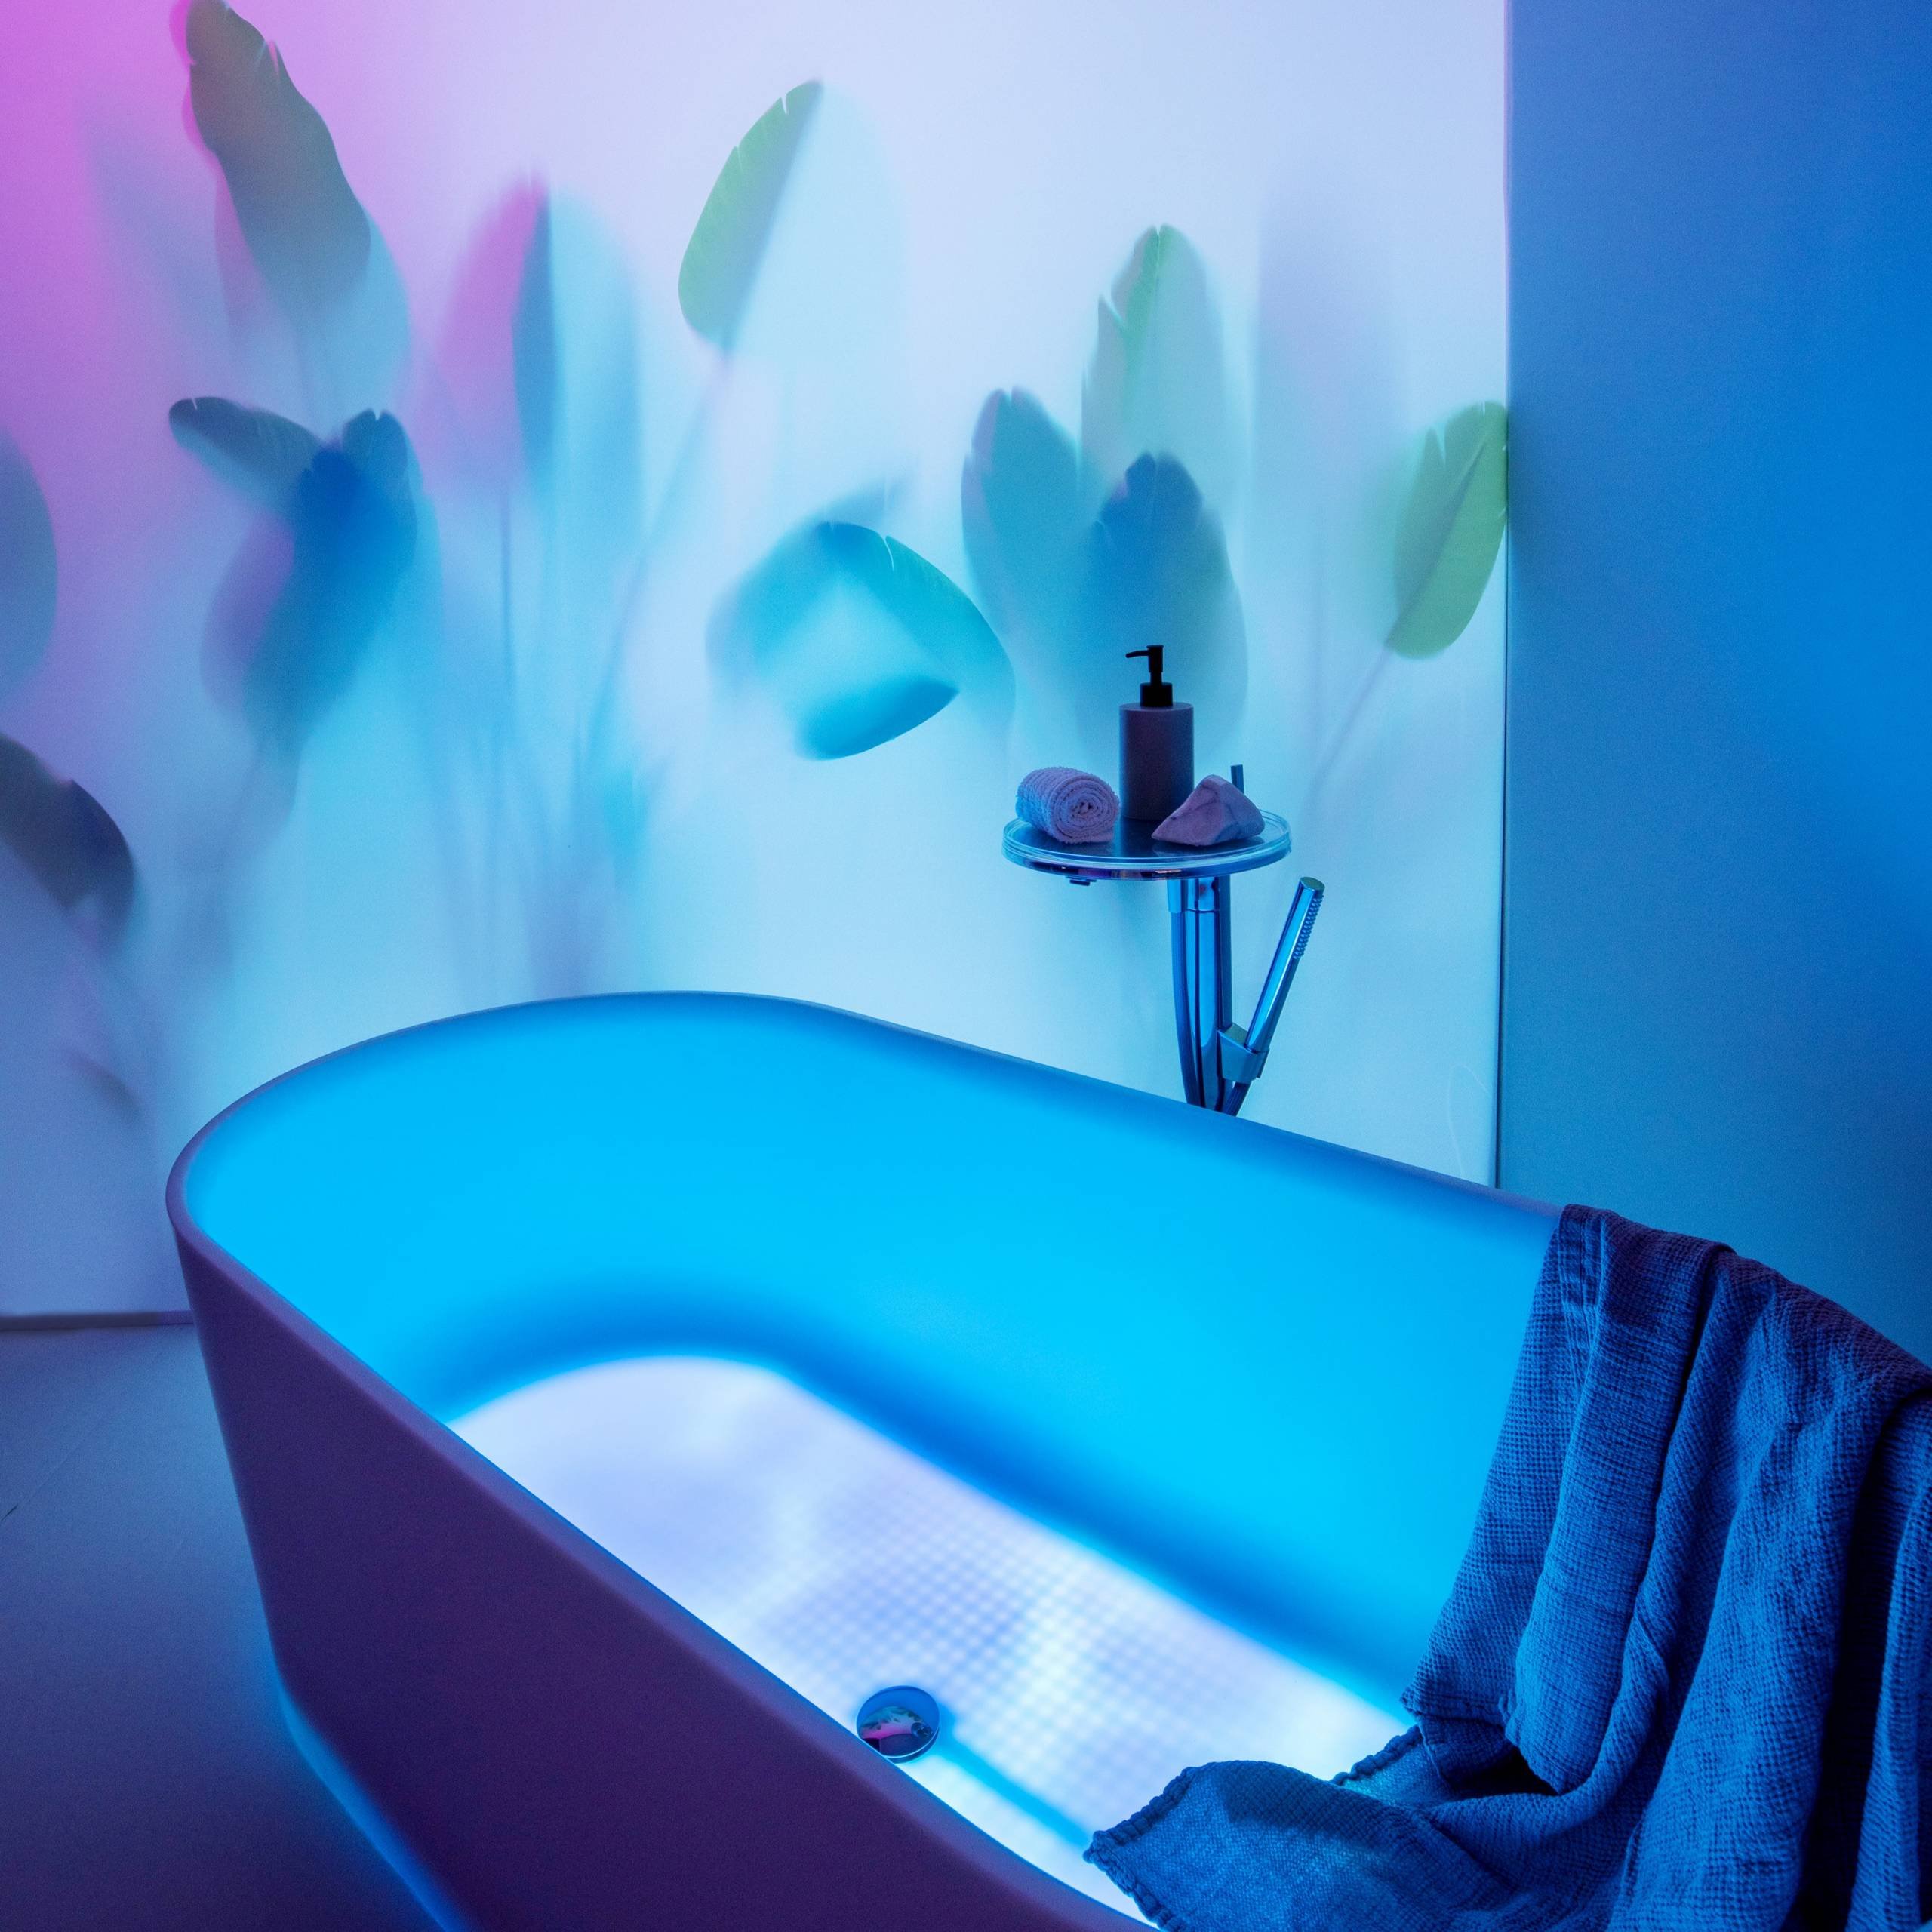 LAUFEN translucent bathtub